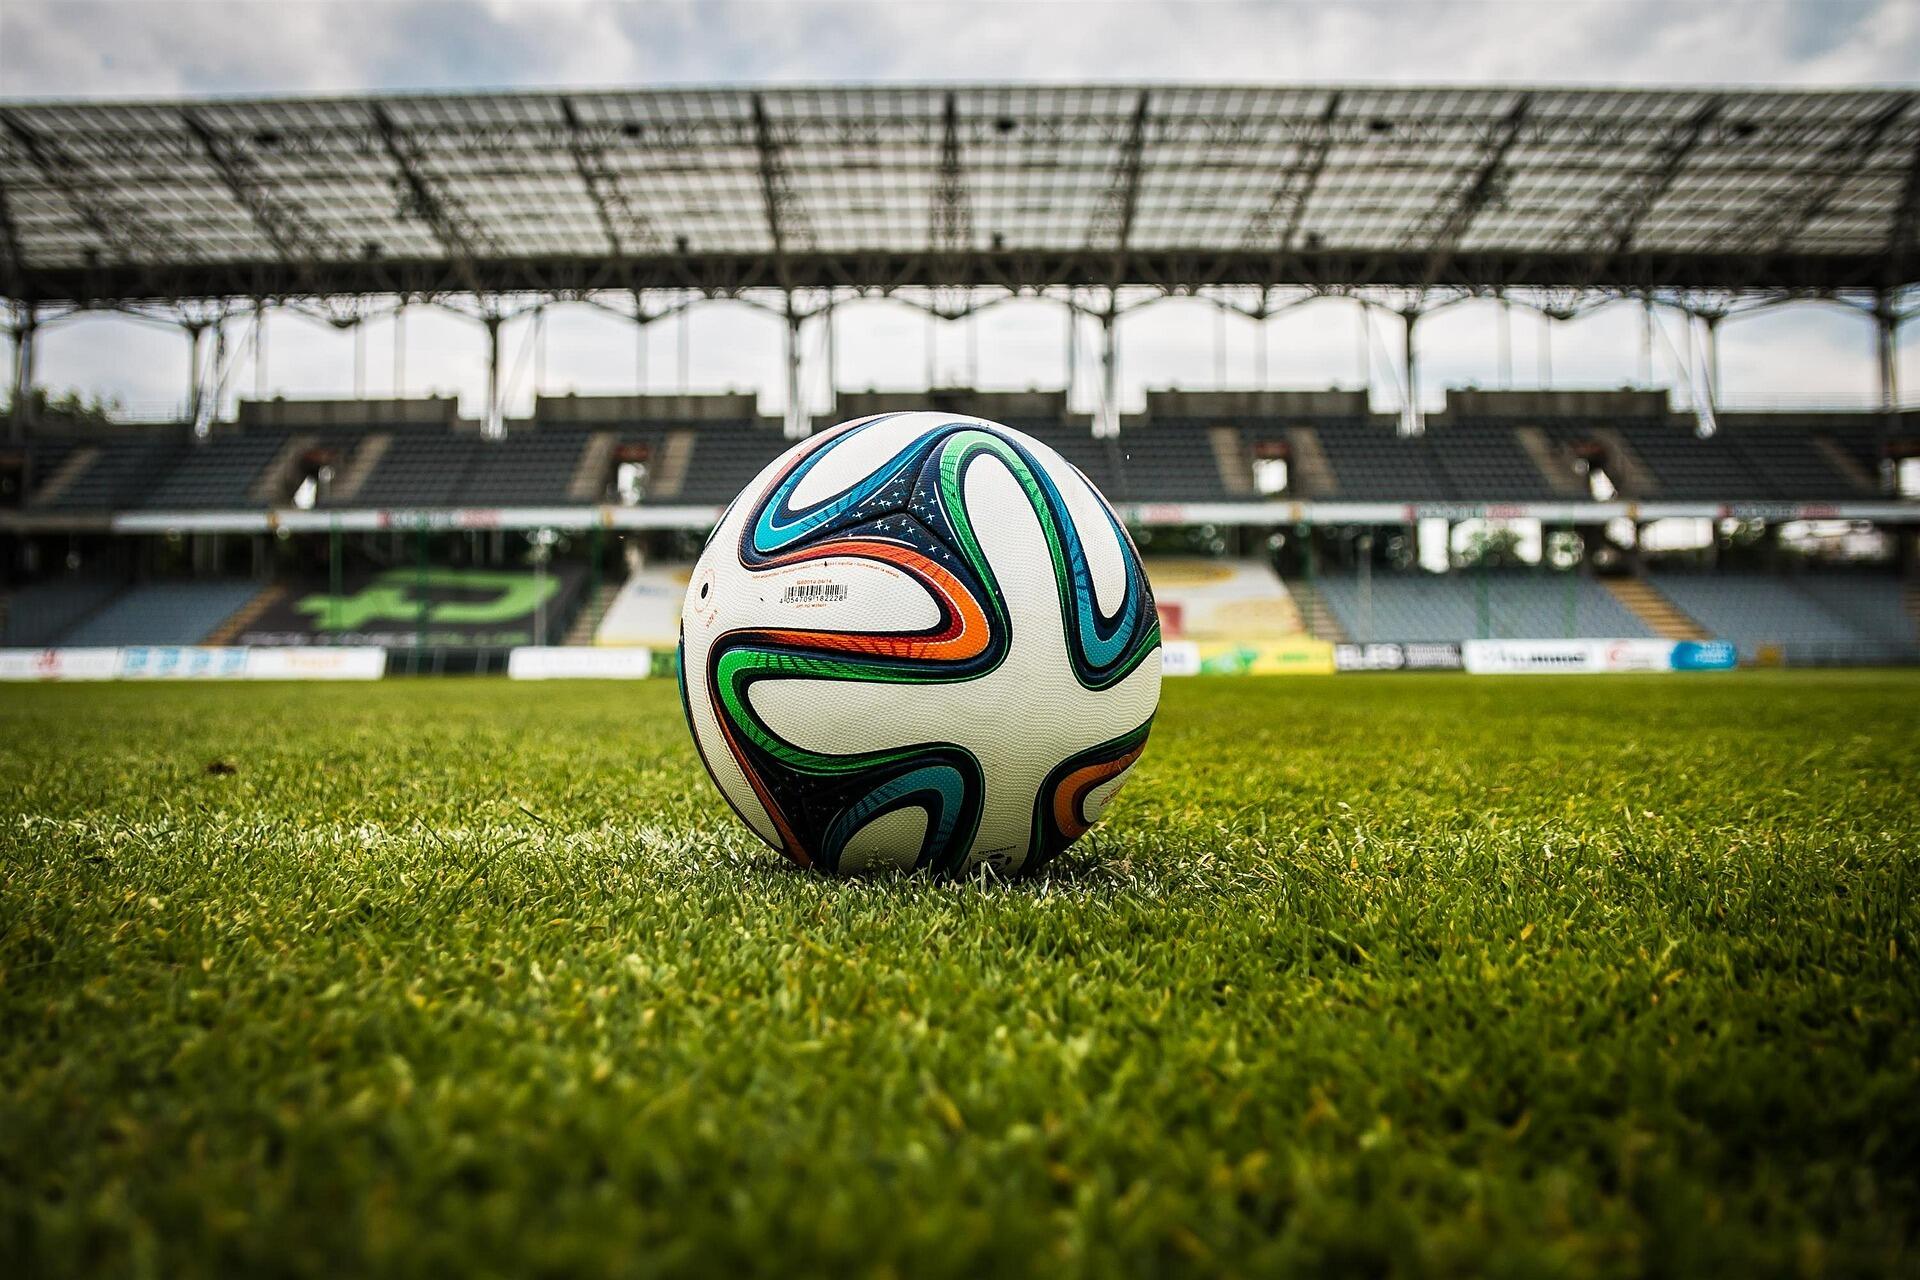 Abbildung eines Fußballs auf dem grünen Rasen eines Stadions